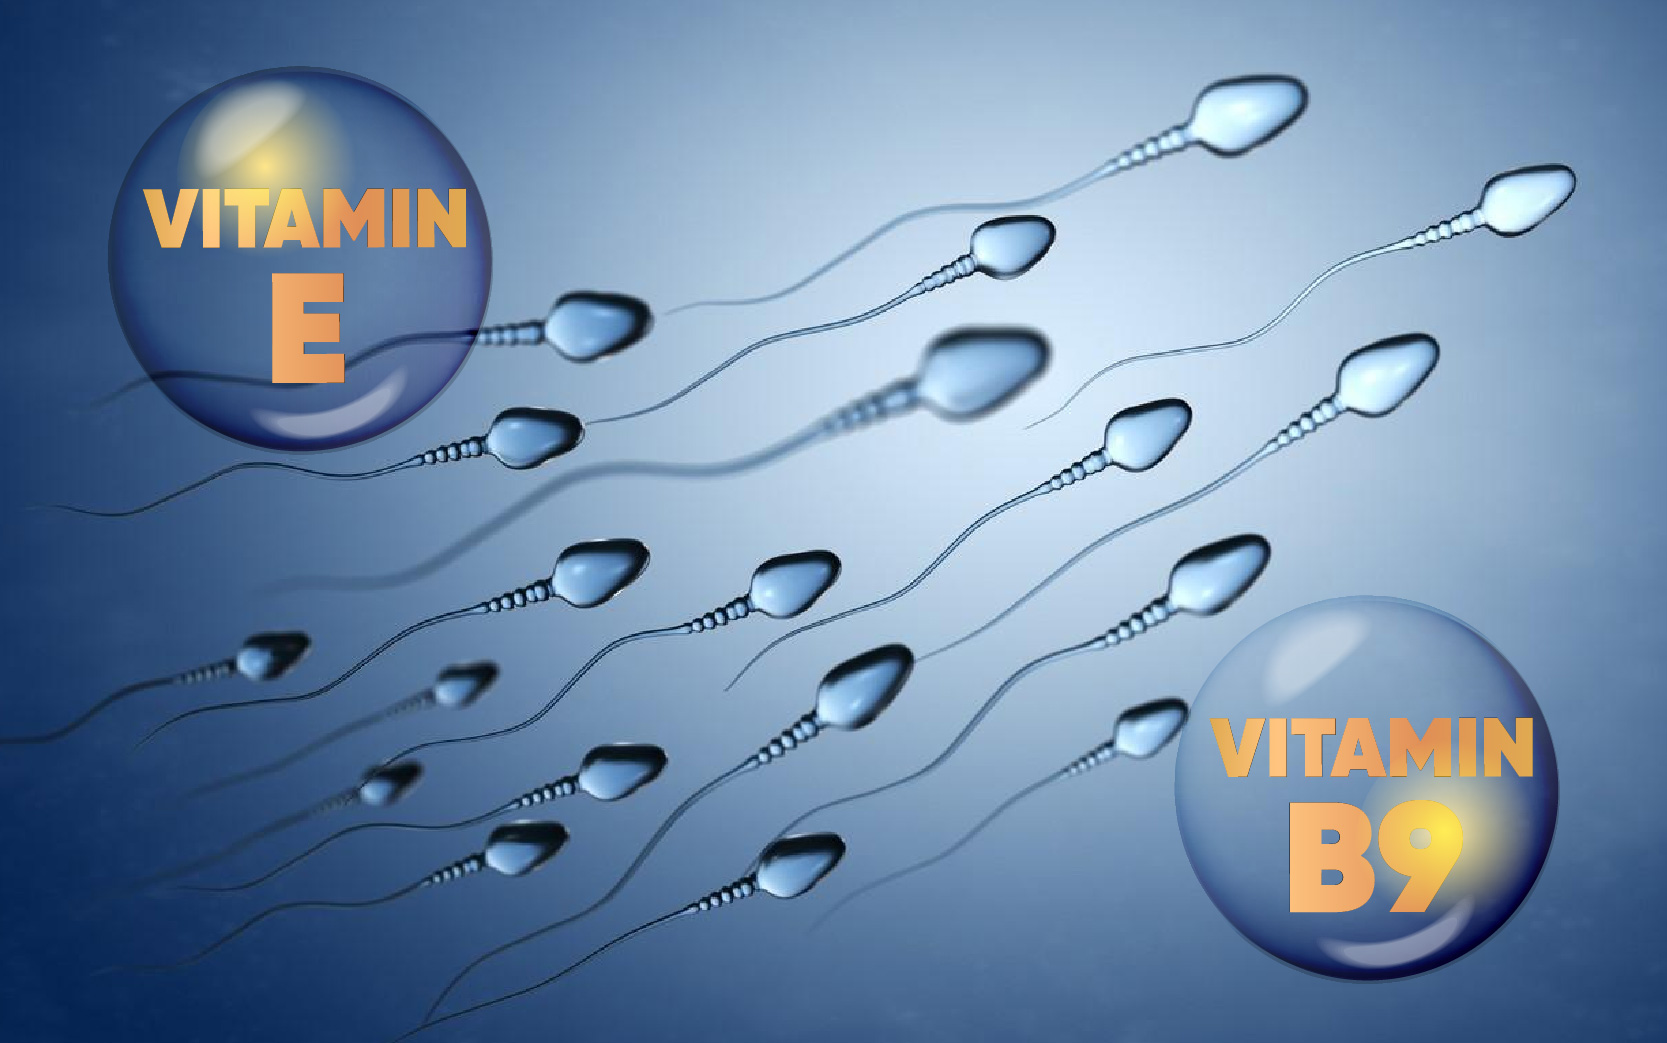 Ảnh: Vitamin E và vitamin B9 đều có tác dụng quan trọng với tinh trùng và sức khỏe sinh sản nam giới